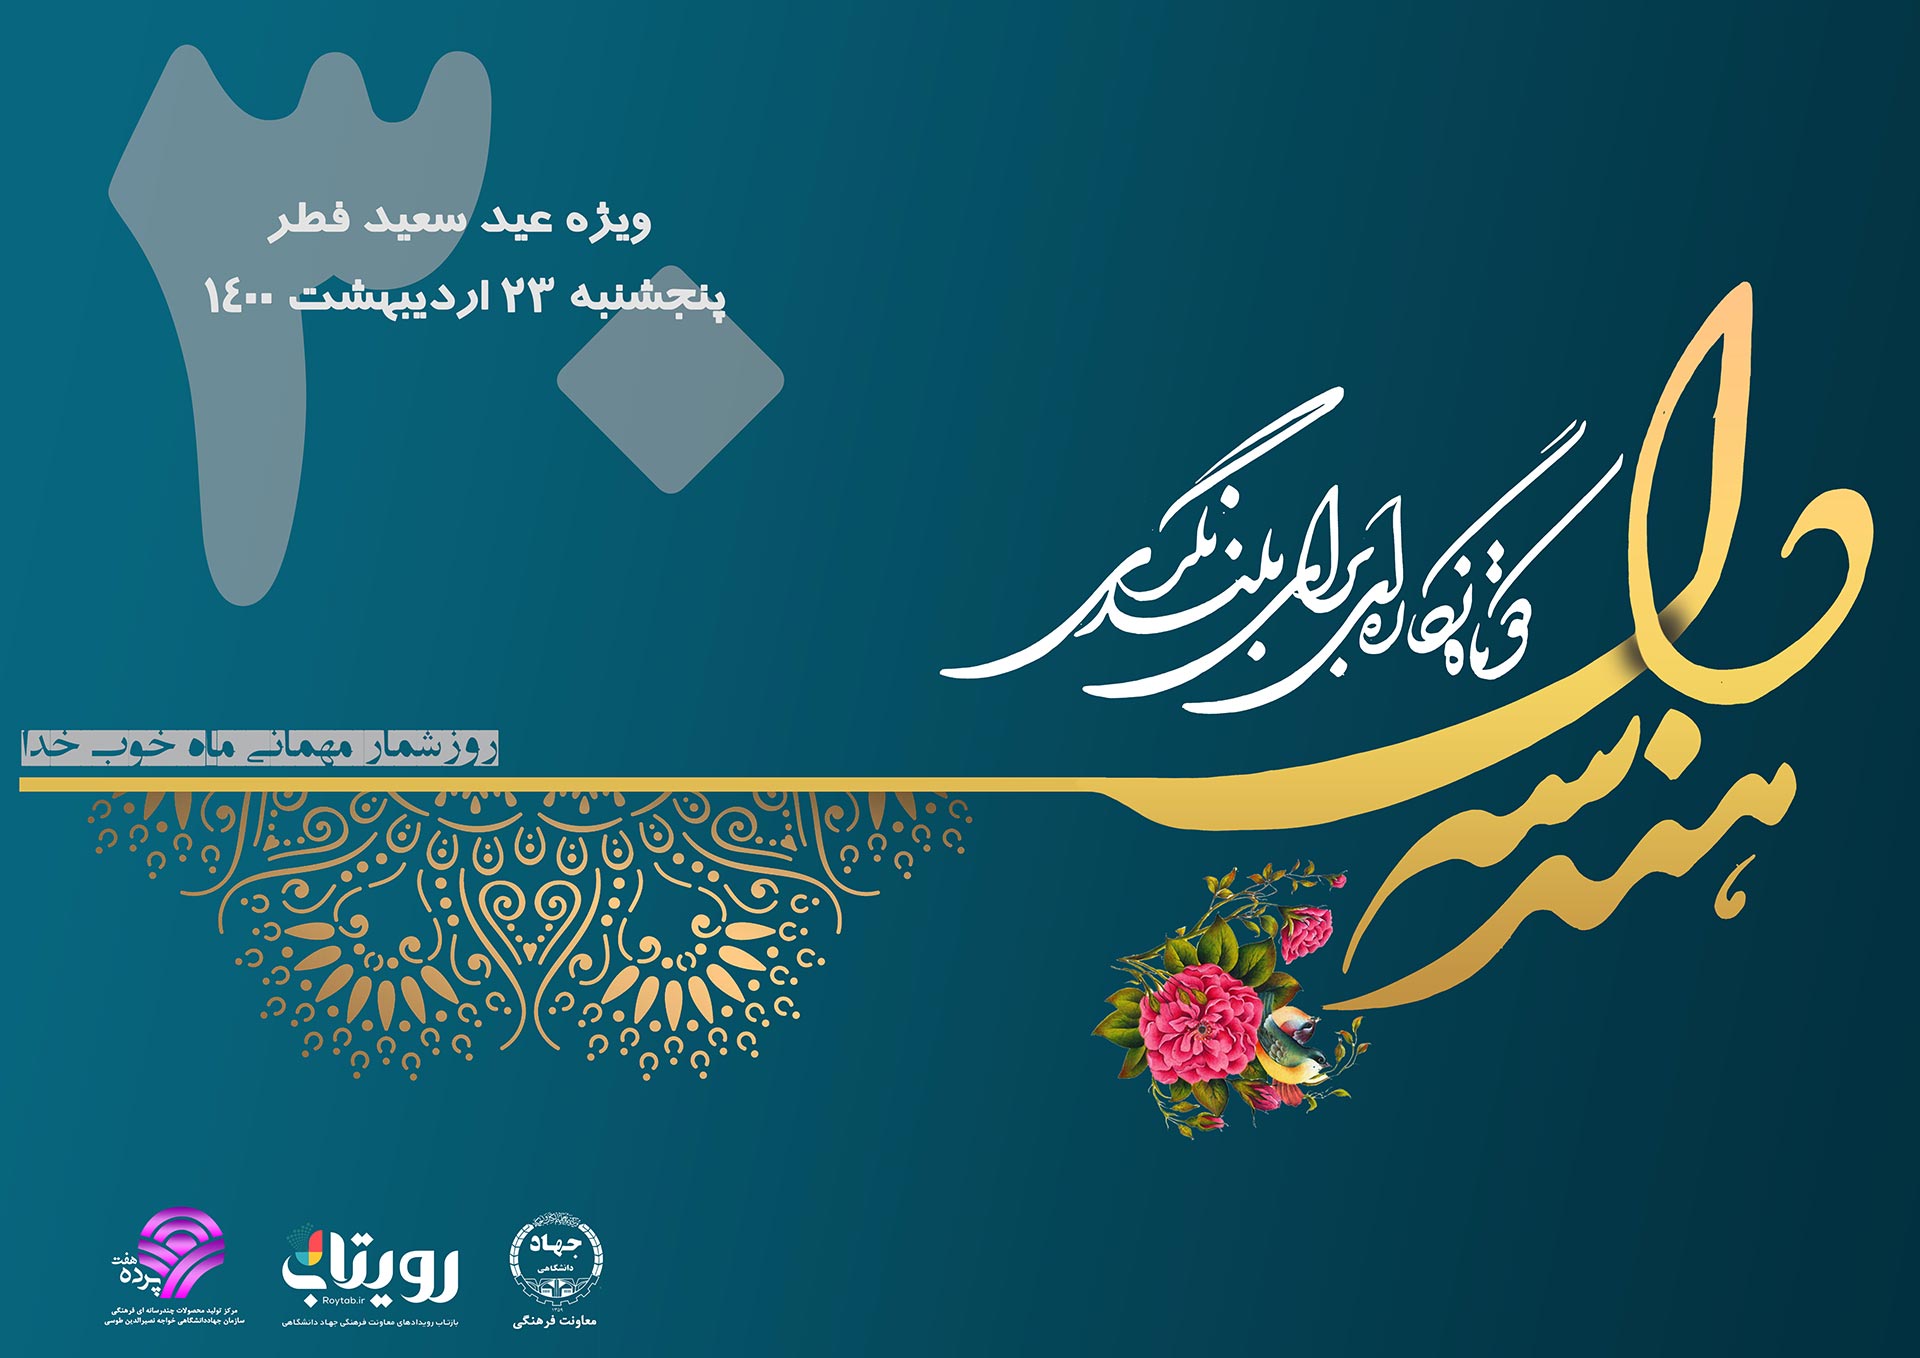 نشریه «هندسه دل» ویژه اولین روز عید سعید فطر